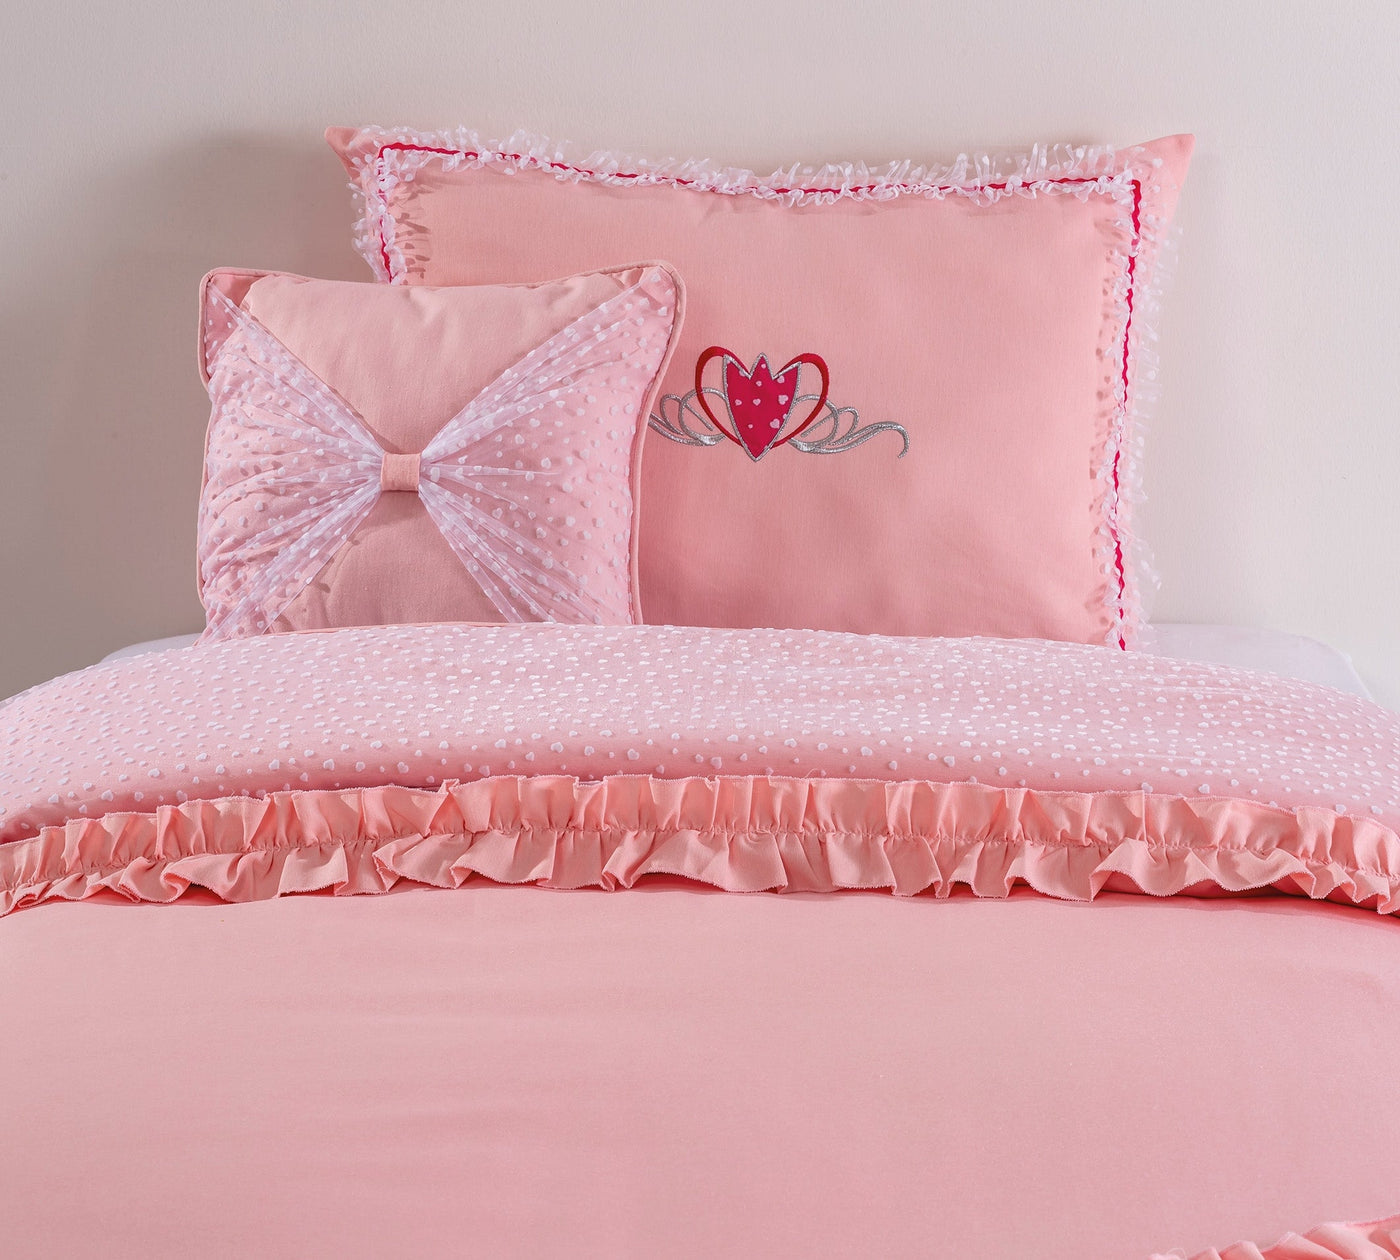 Rosa prekrivač za krevet (90-100 cm)